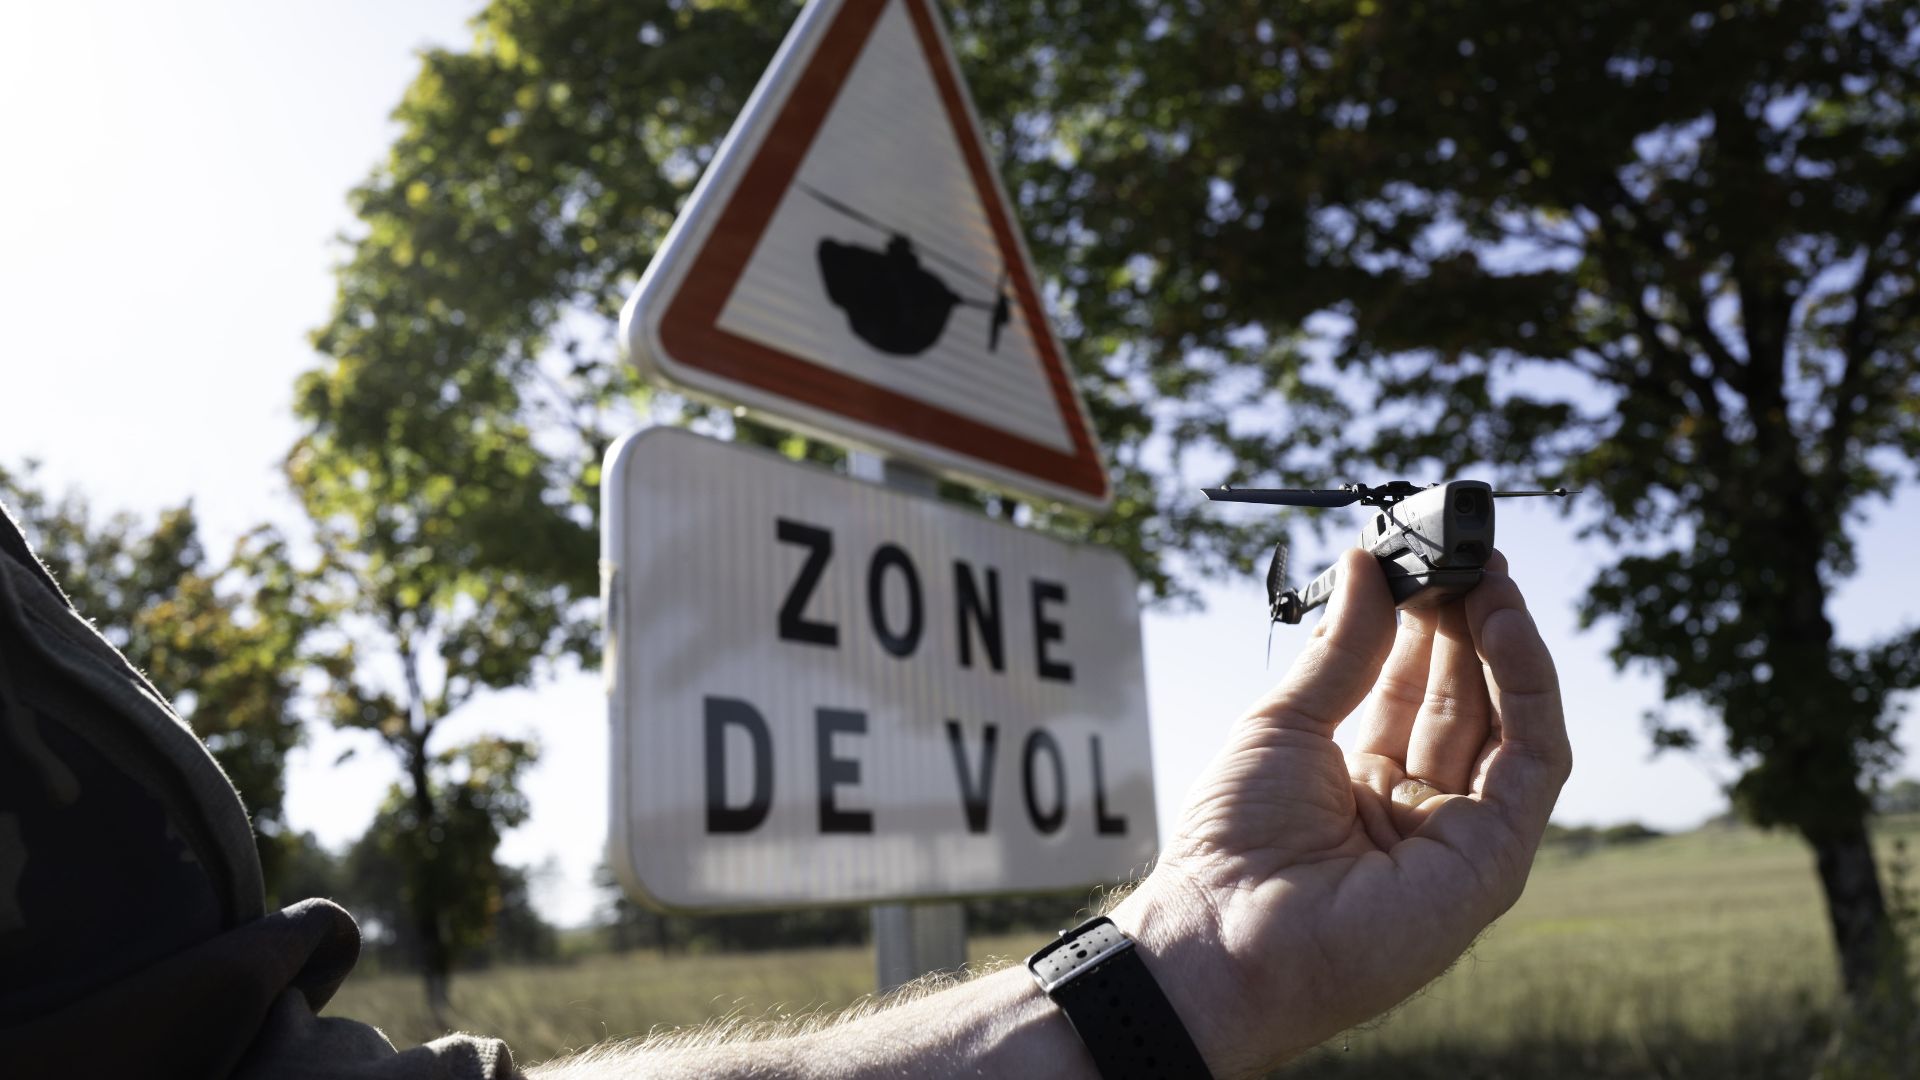 Le nano-drone Black Hornet 3 ne pèse que 33 grammes pour 16 centimètres. Doté de trois caméras de haute définition, il est équipé de capteurs thermiques, chimiques et infrarouges, pour s’adapter à son environnement de jour comme de nuit.